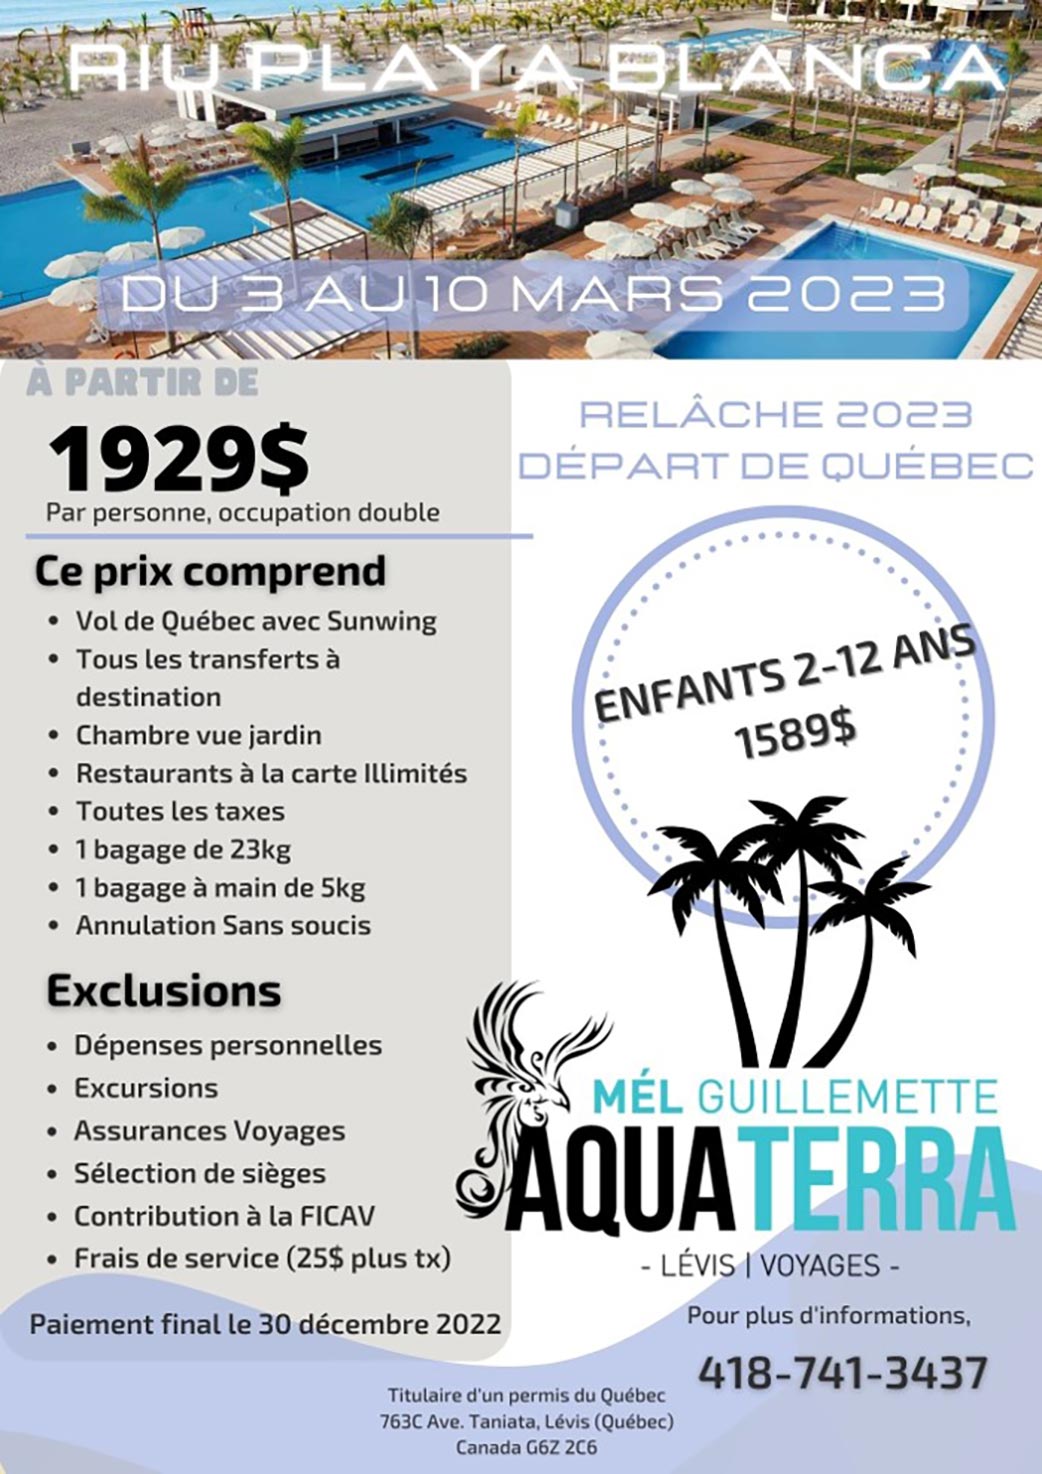 Voyage au Riu Playa Blanca du 3 au 10 mars 2023